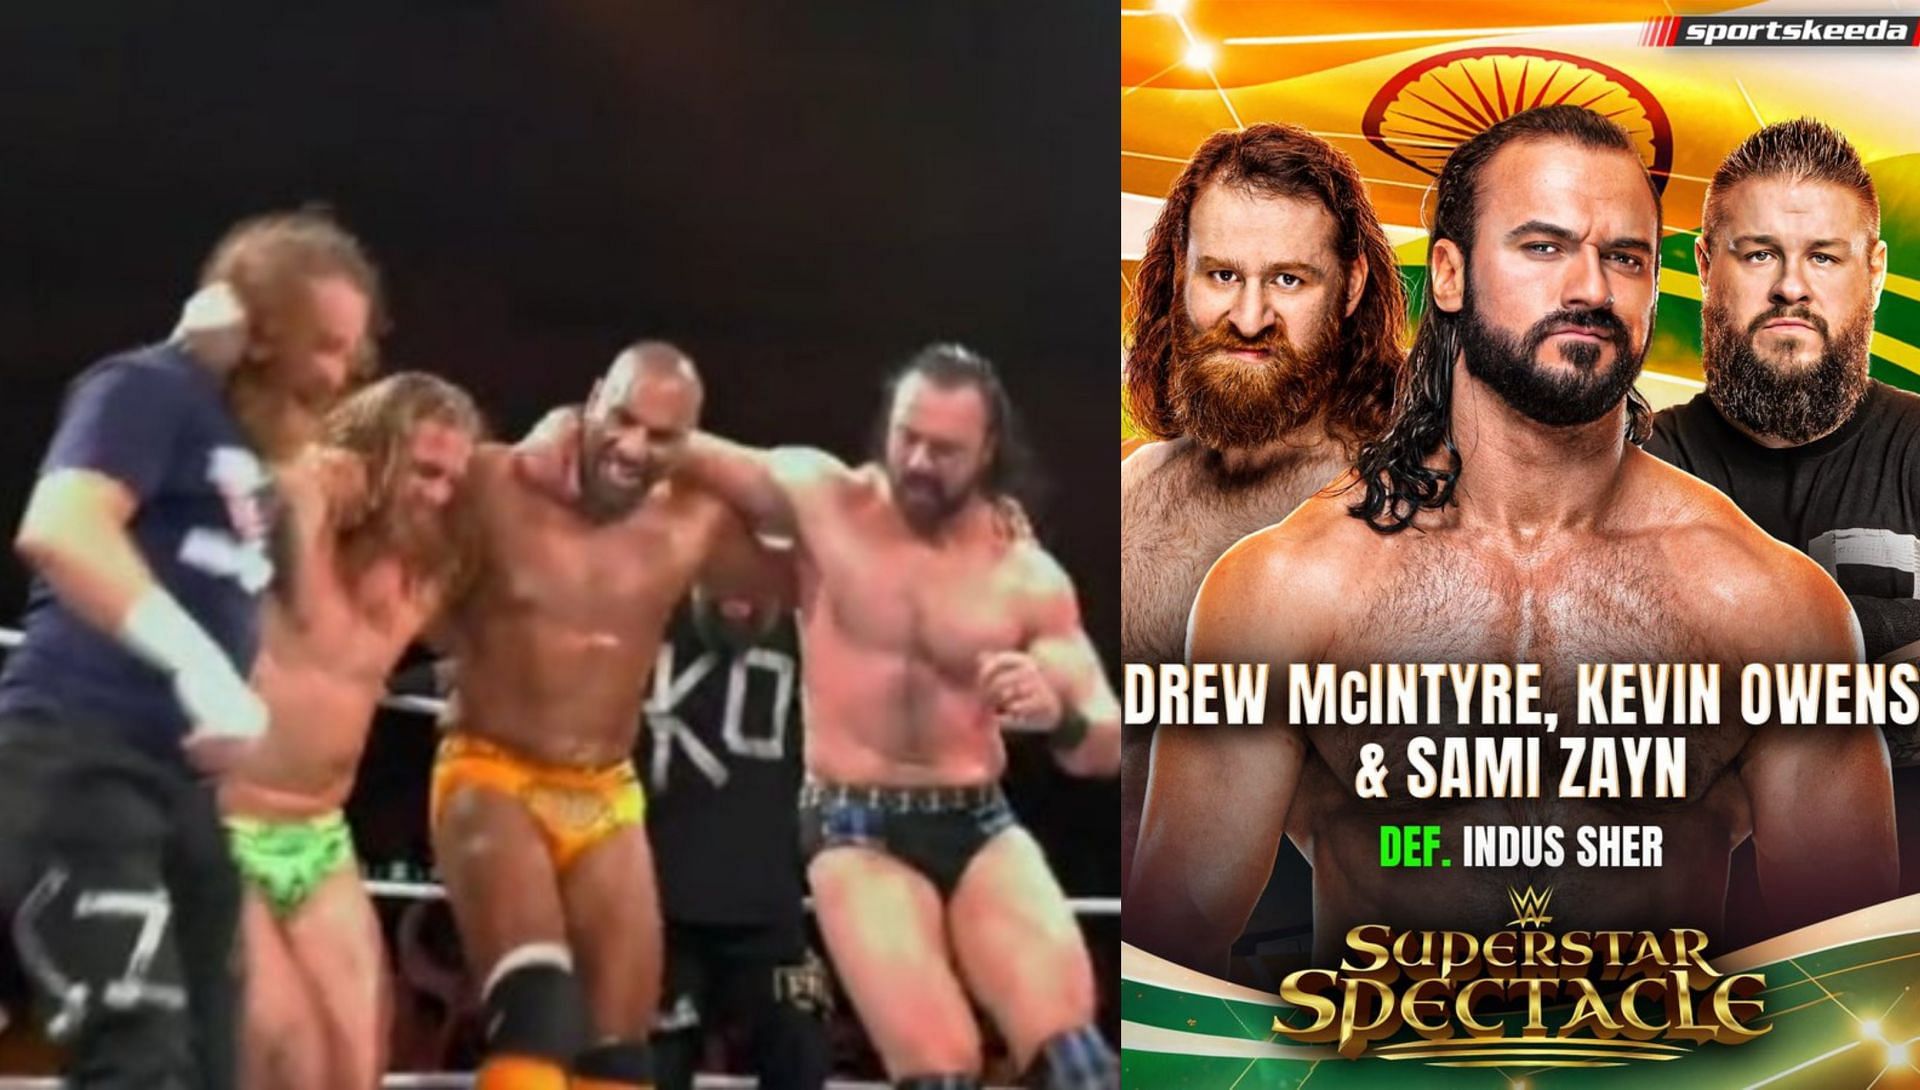  WWE Superstar Spectacle में फैंस को आया मजा